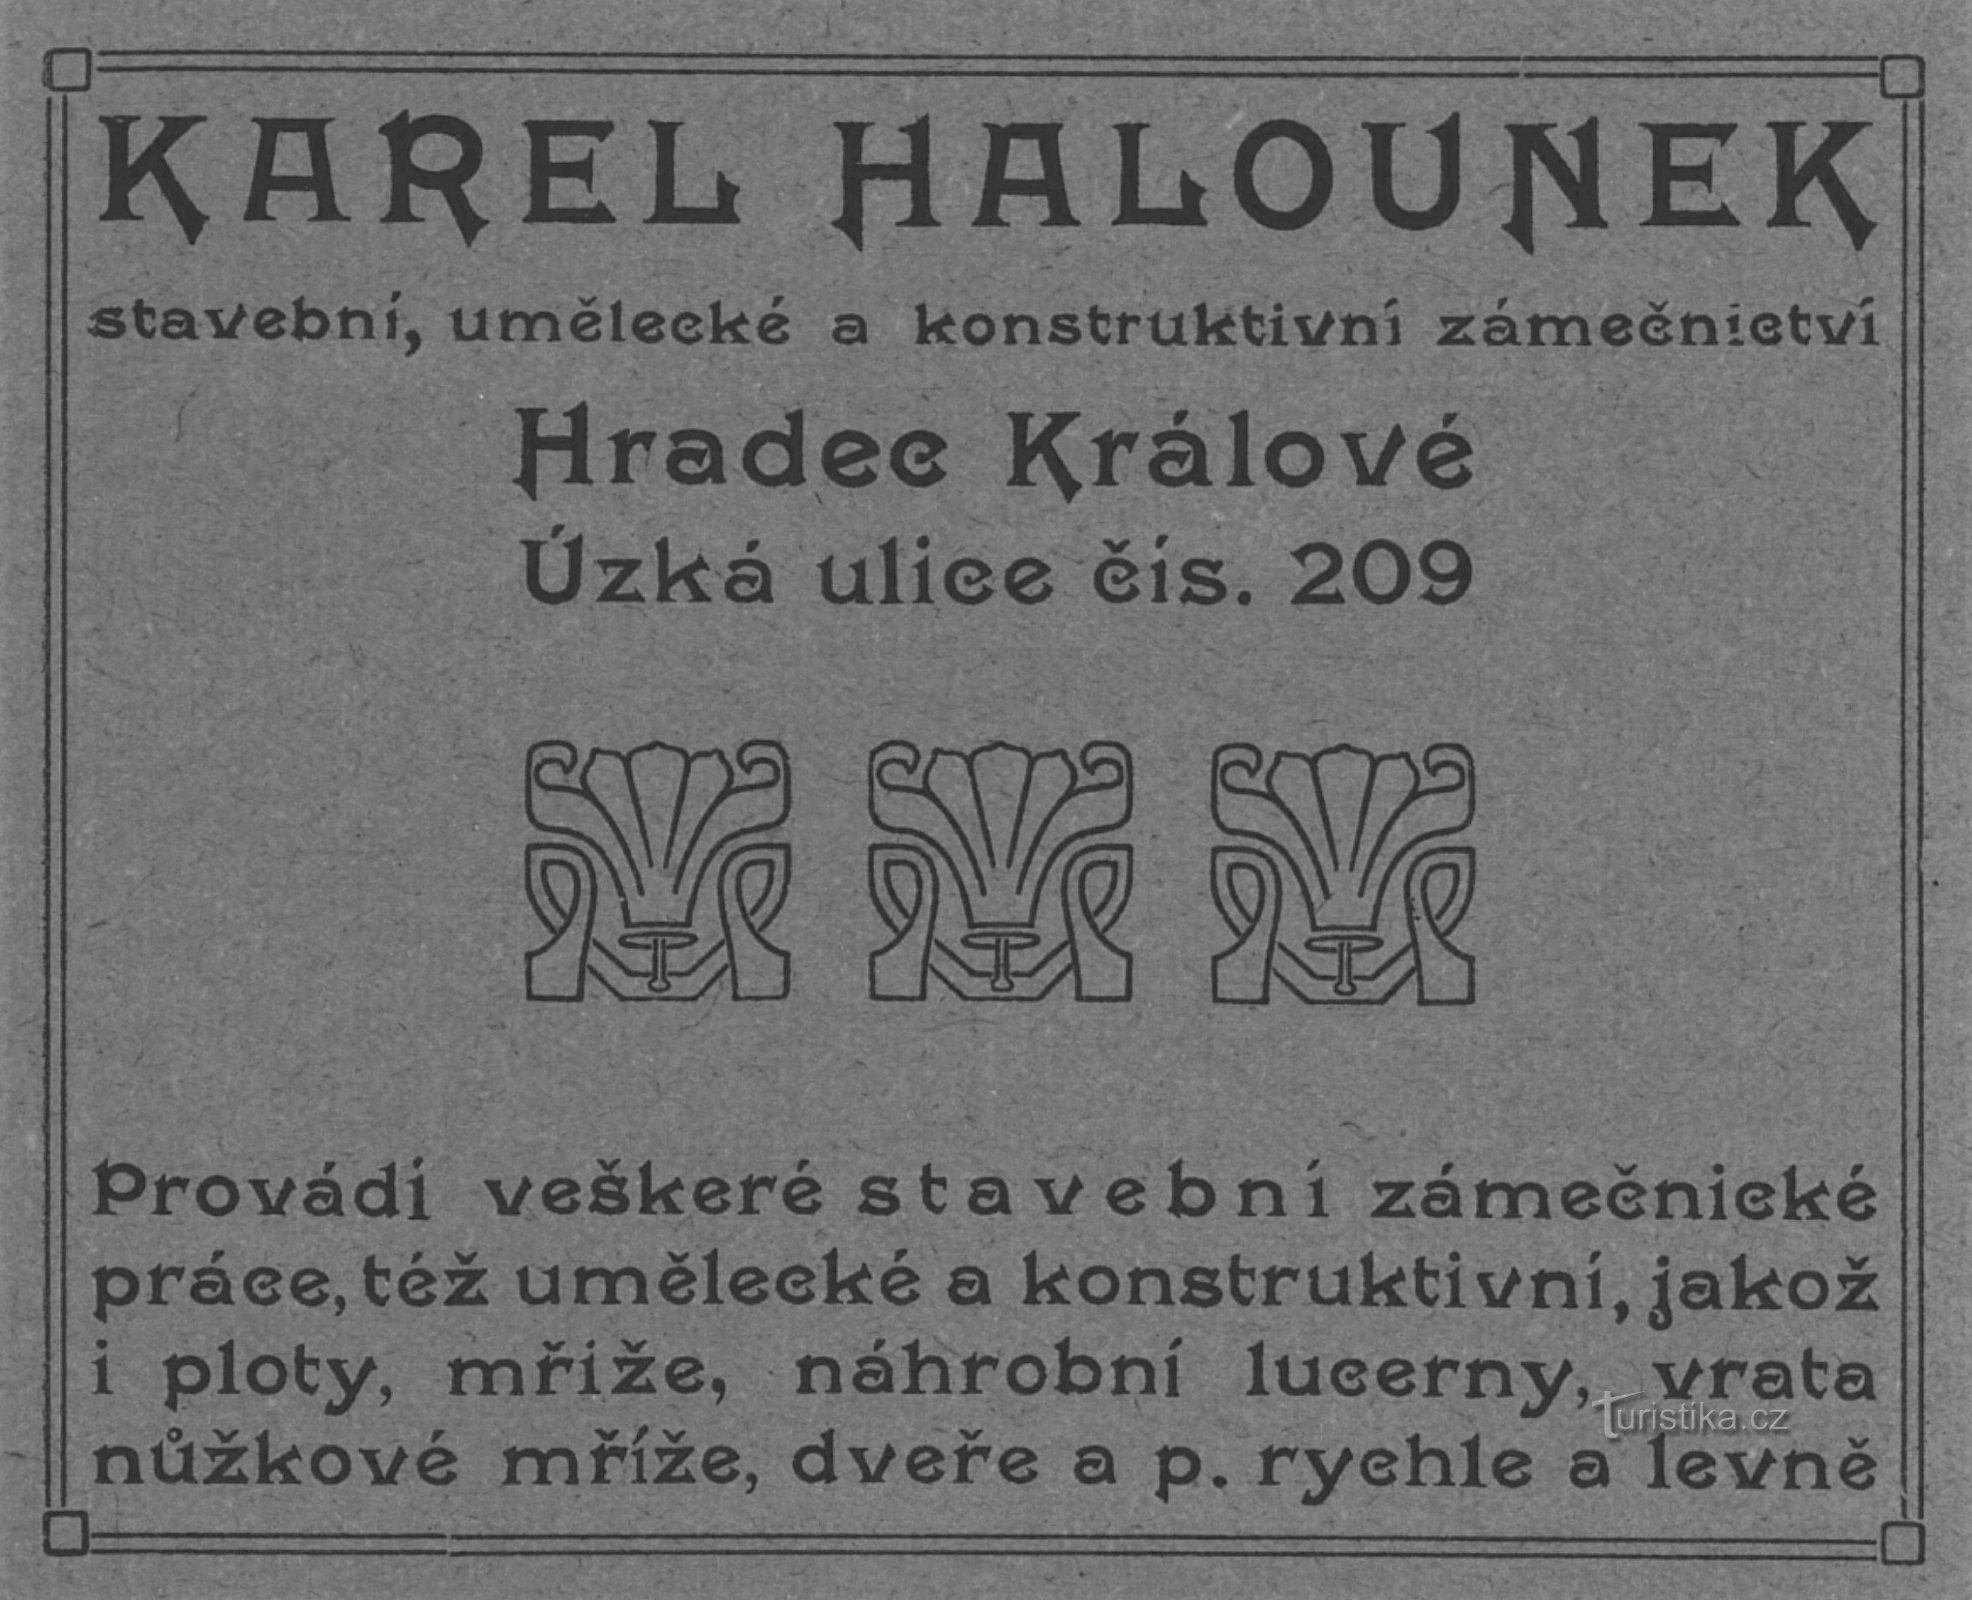 Reklama z epoki warsztatu ślusarskiego Halounk